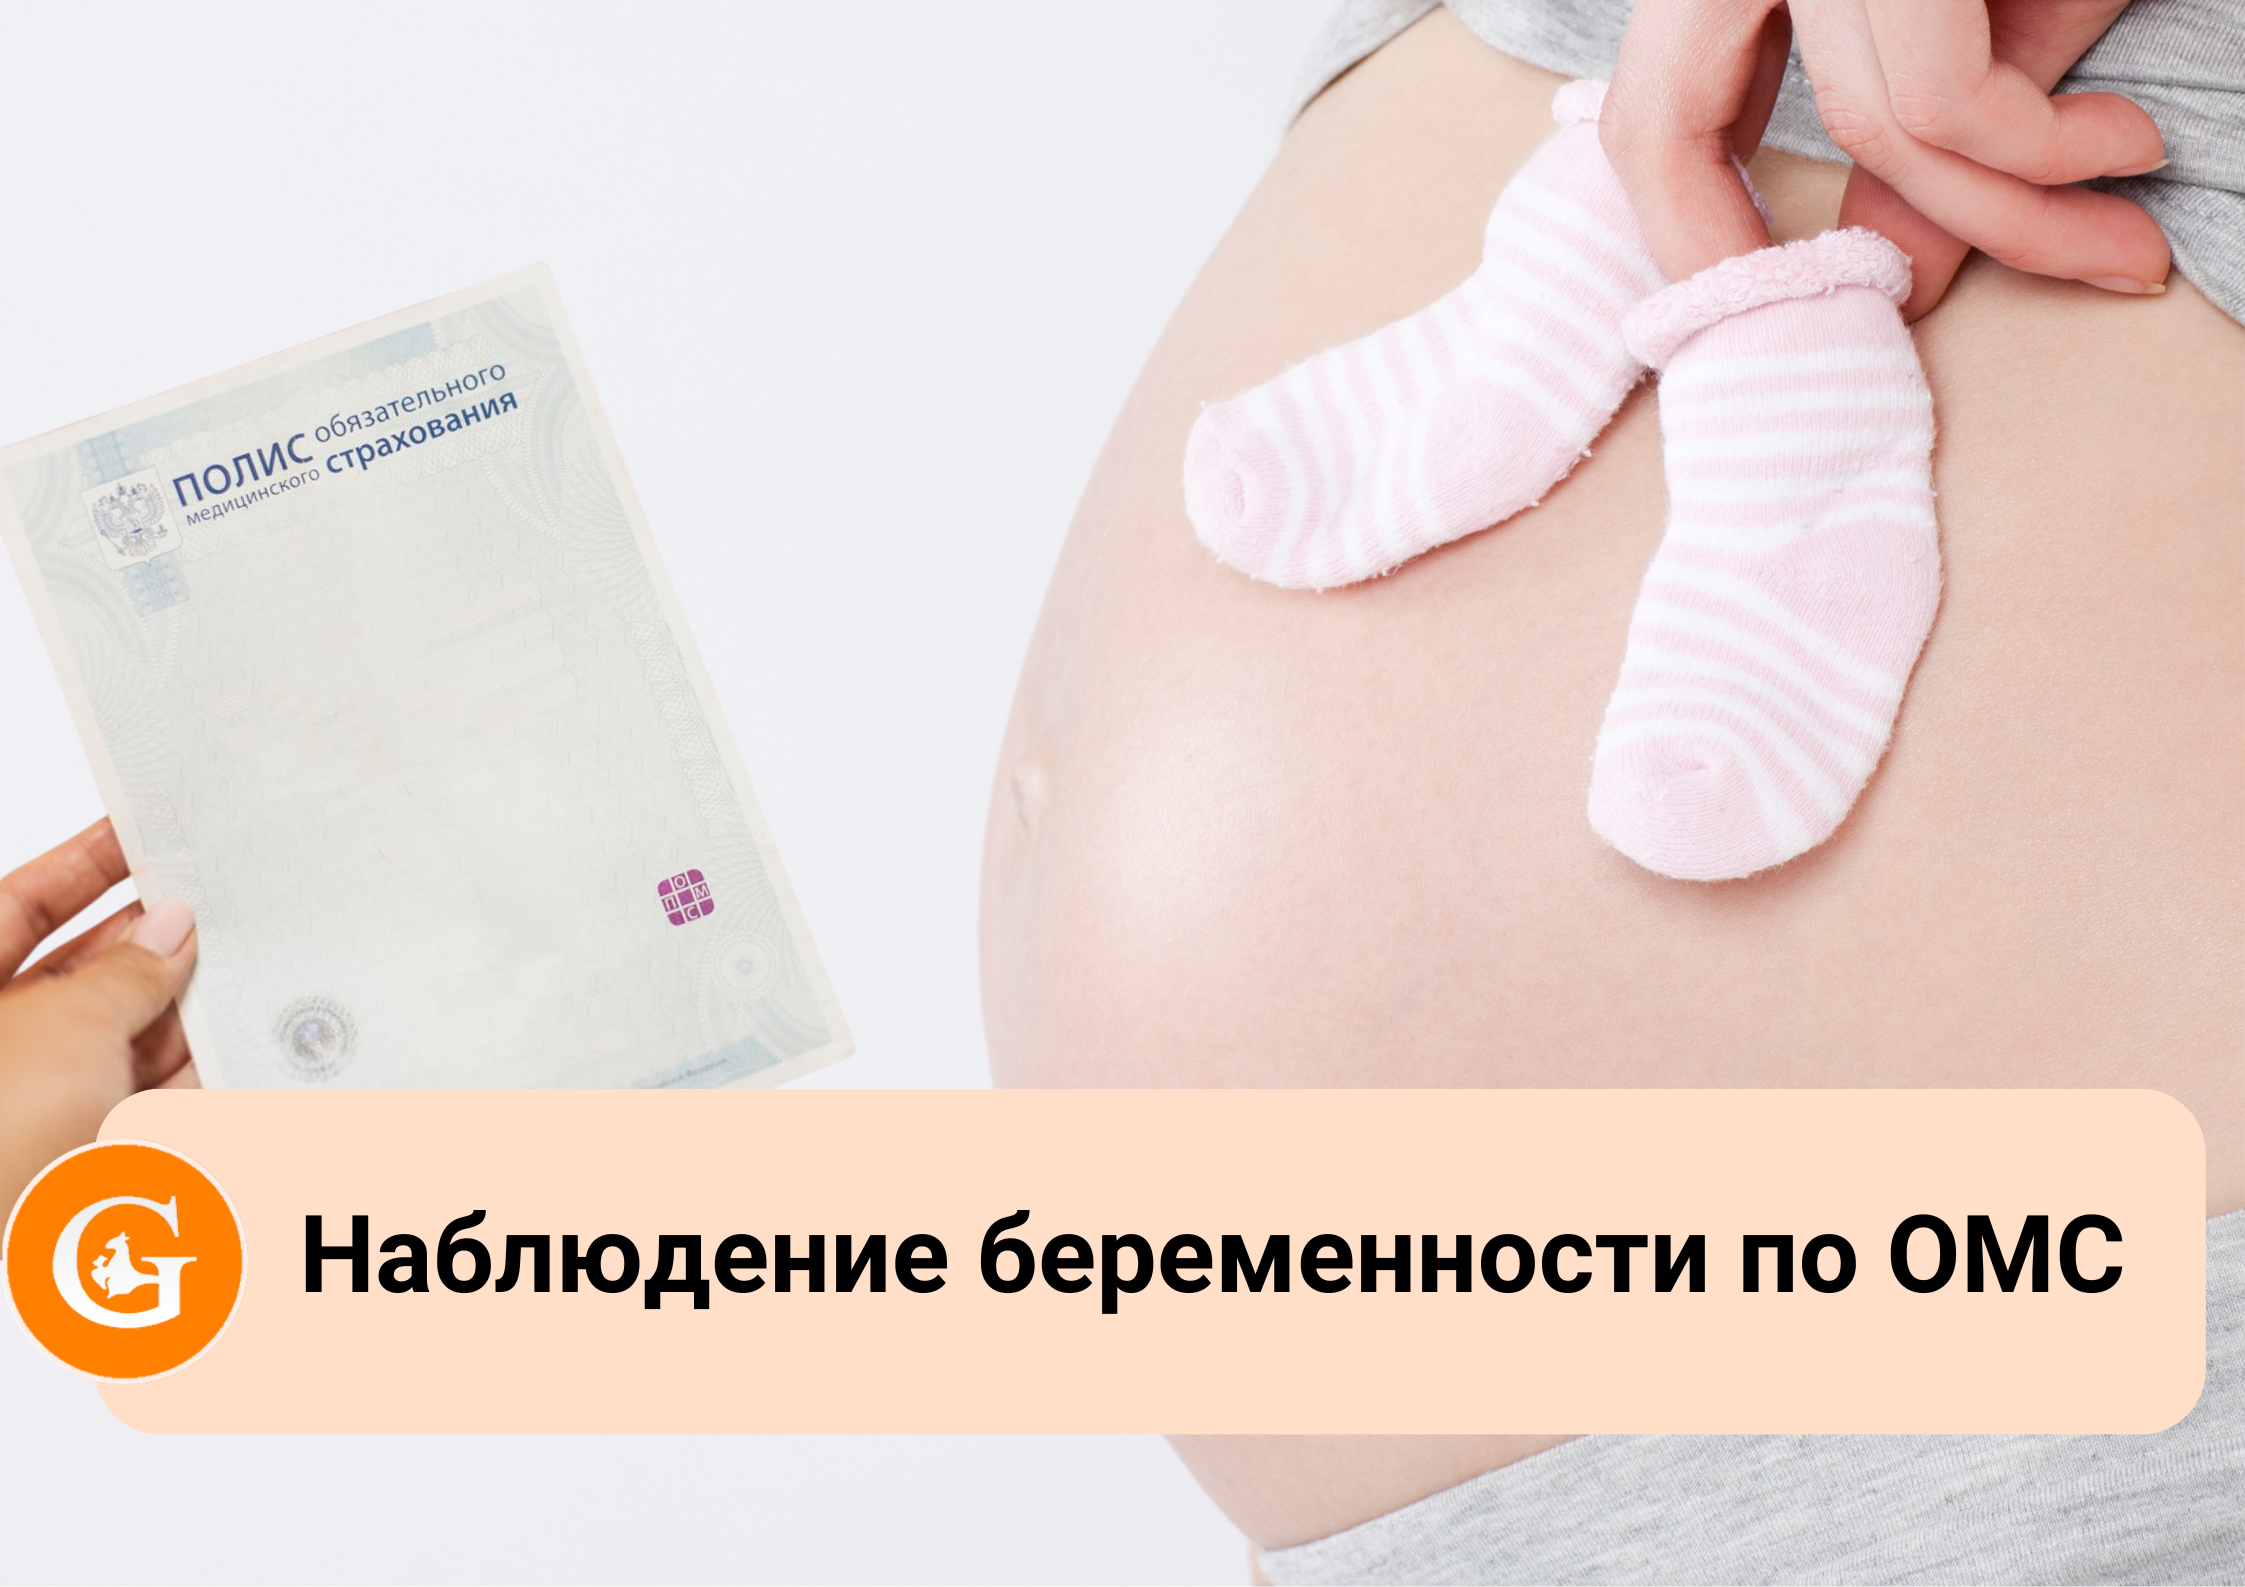 Ведение беременности по ОМС в поликлинике Генезис (Мирное) для прикрепленных пациентов